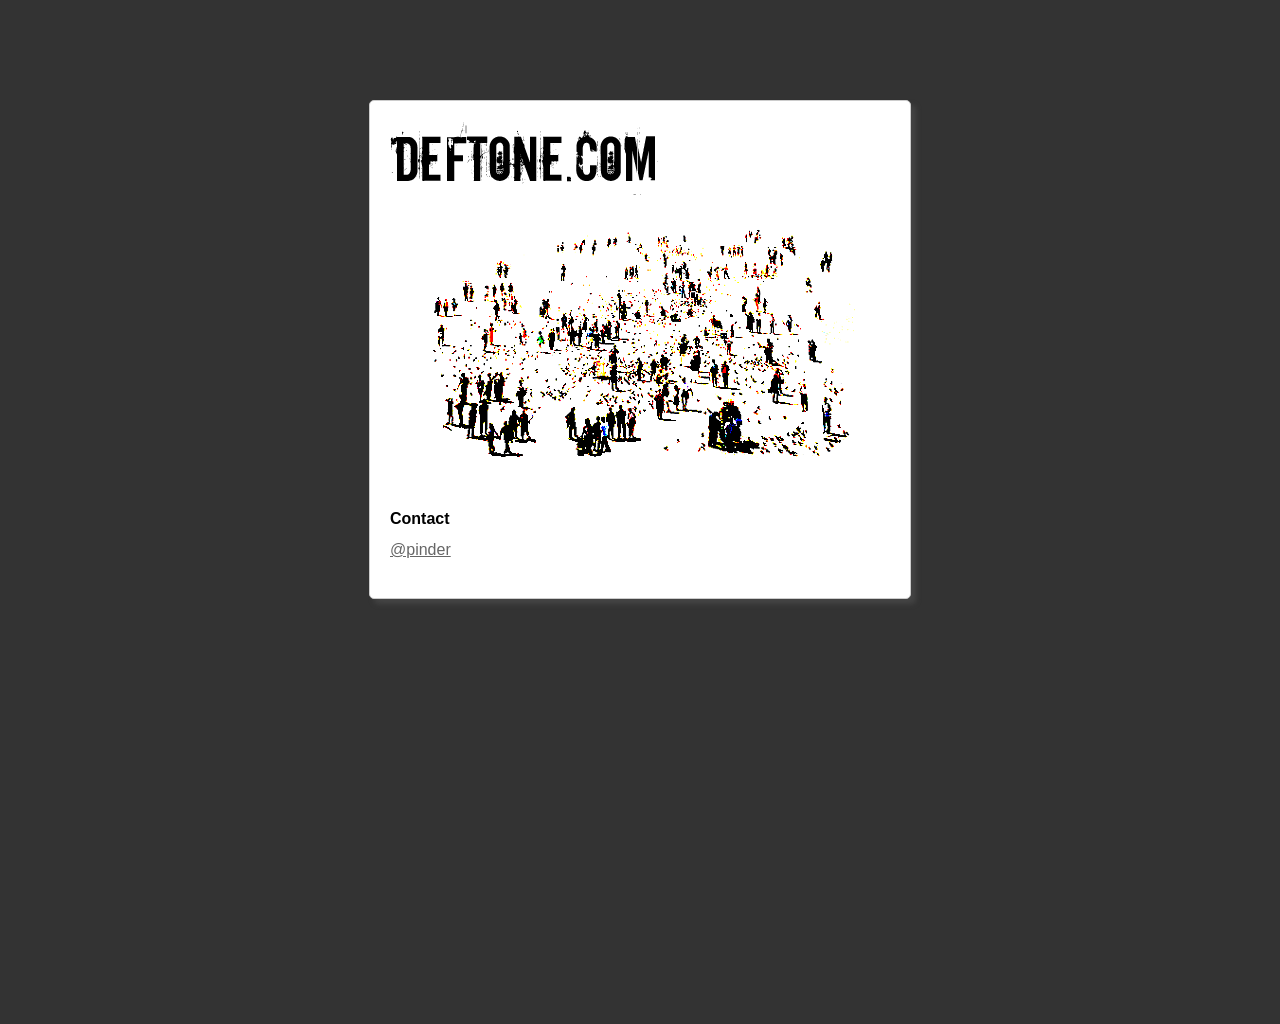 deftone.com